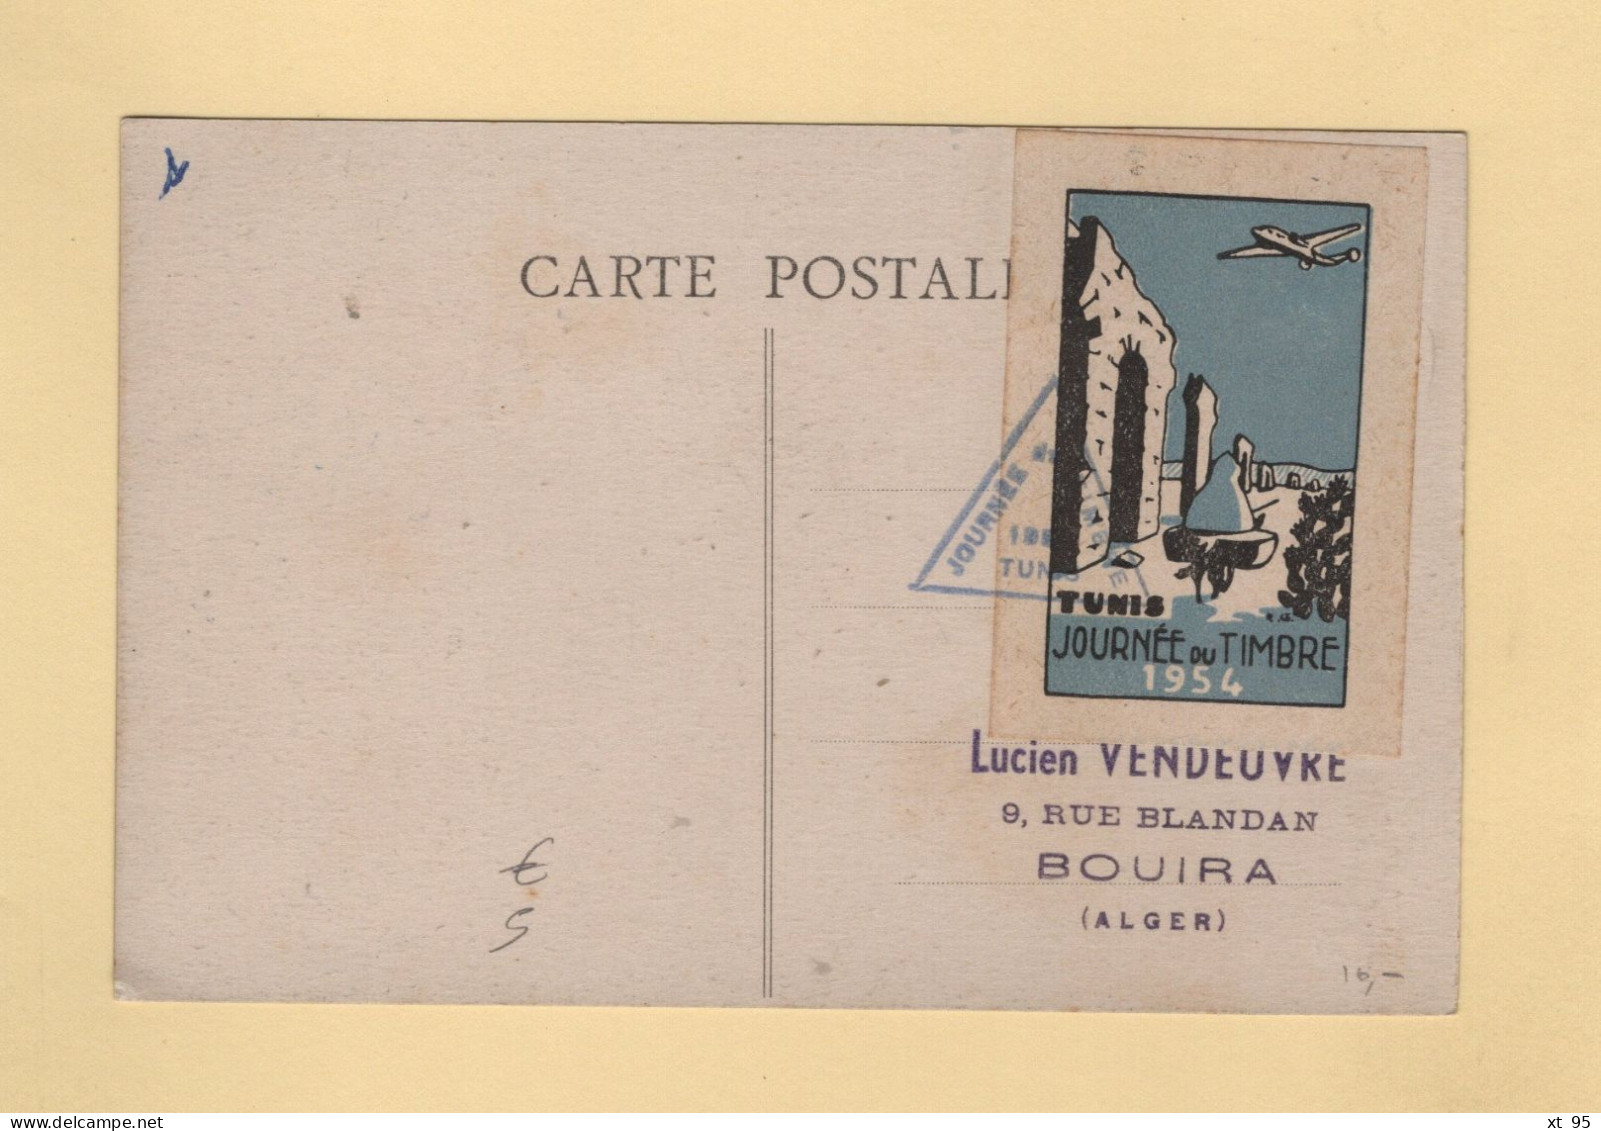 Tunisie - Journee Du Timbre - 1954 - Vignette Au Dos - Brieven En Documenten